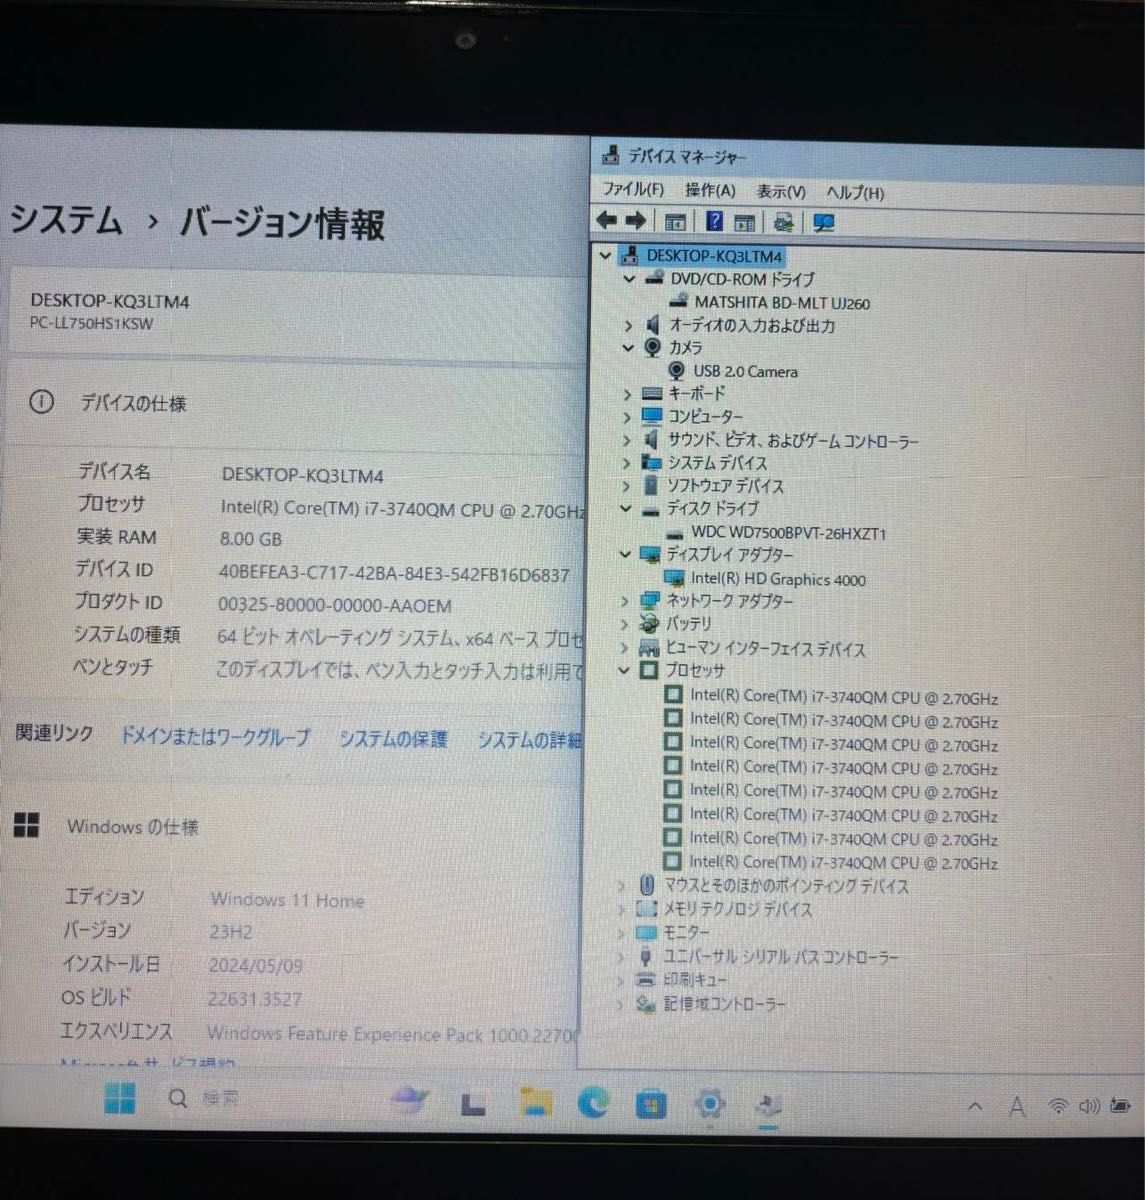 NECノートパソコン/ LL750/H/Core i7-3740QM//メモリ8/BD-RE/YAMAHA高音質/Office/